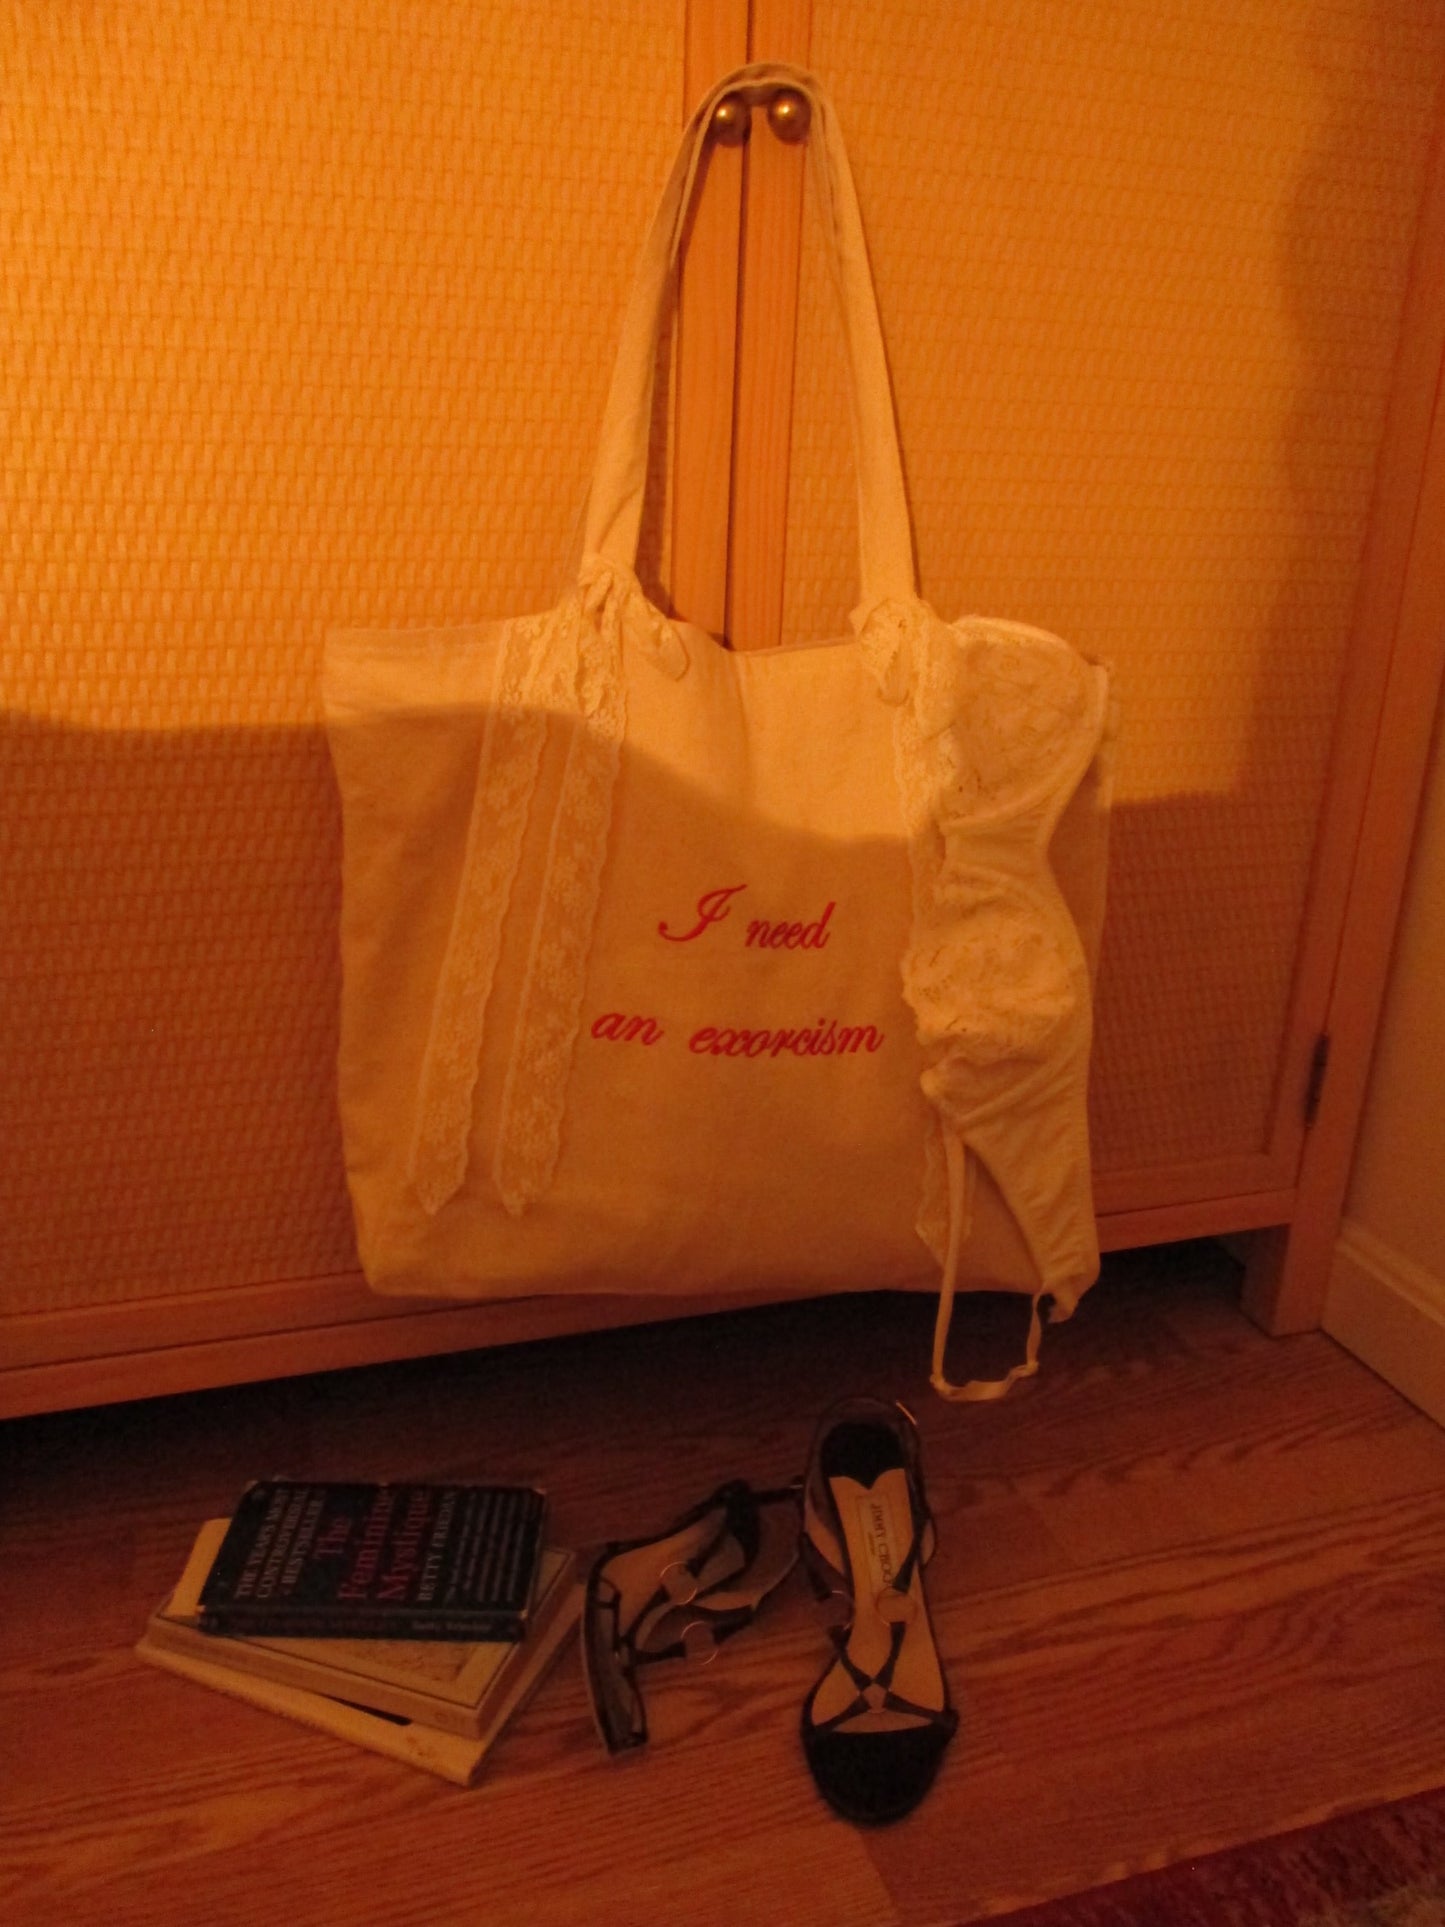 Bag by Ari